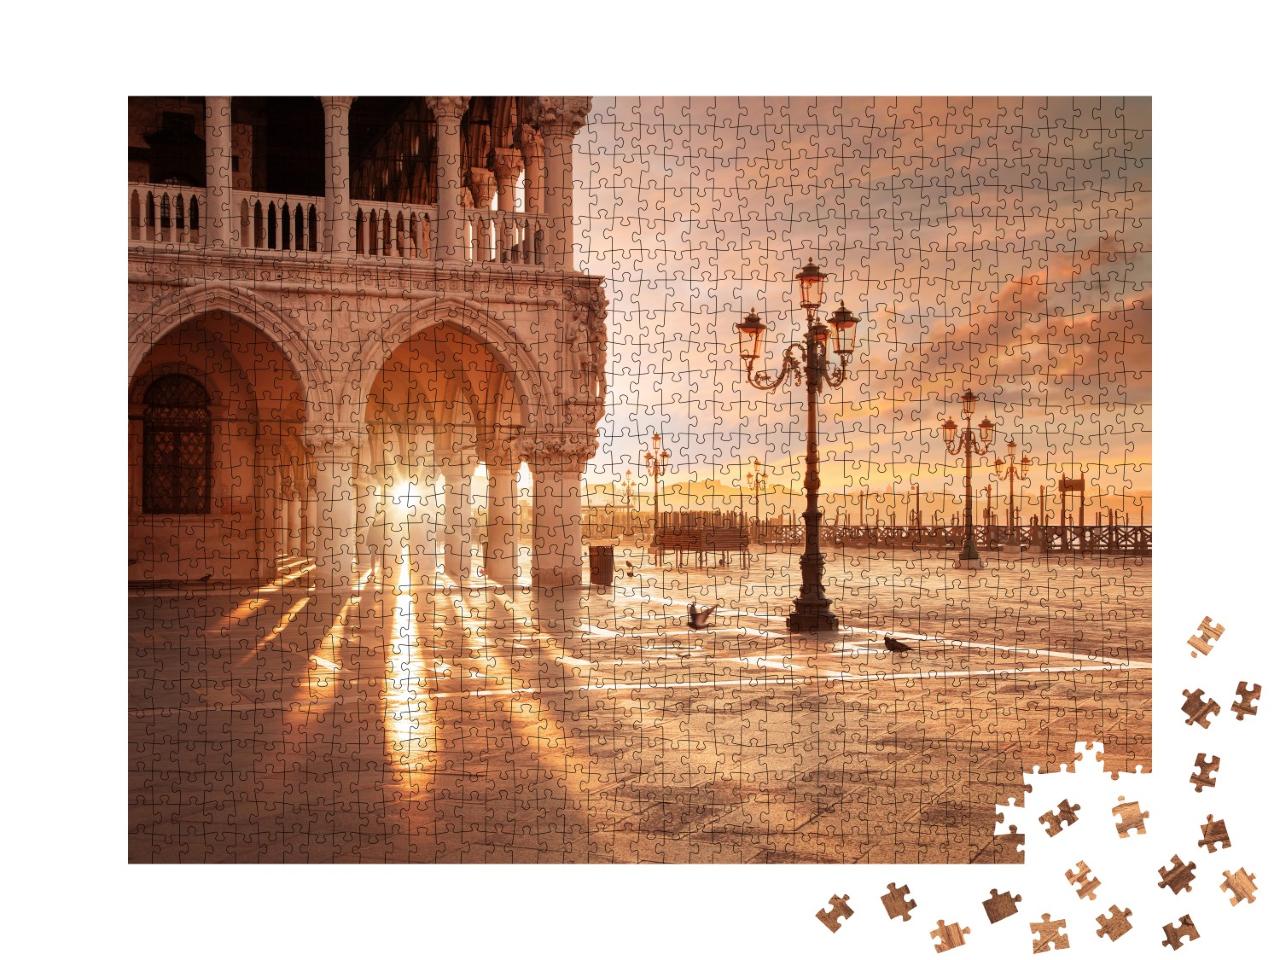 Puzzle 1000 Teile „San Marco in Venedig im Sonnenaufgang“